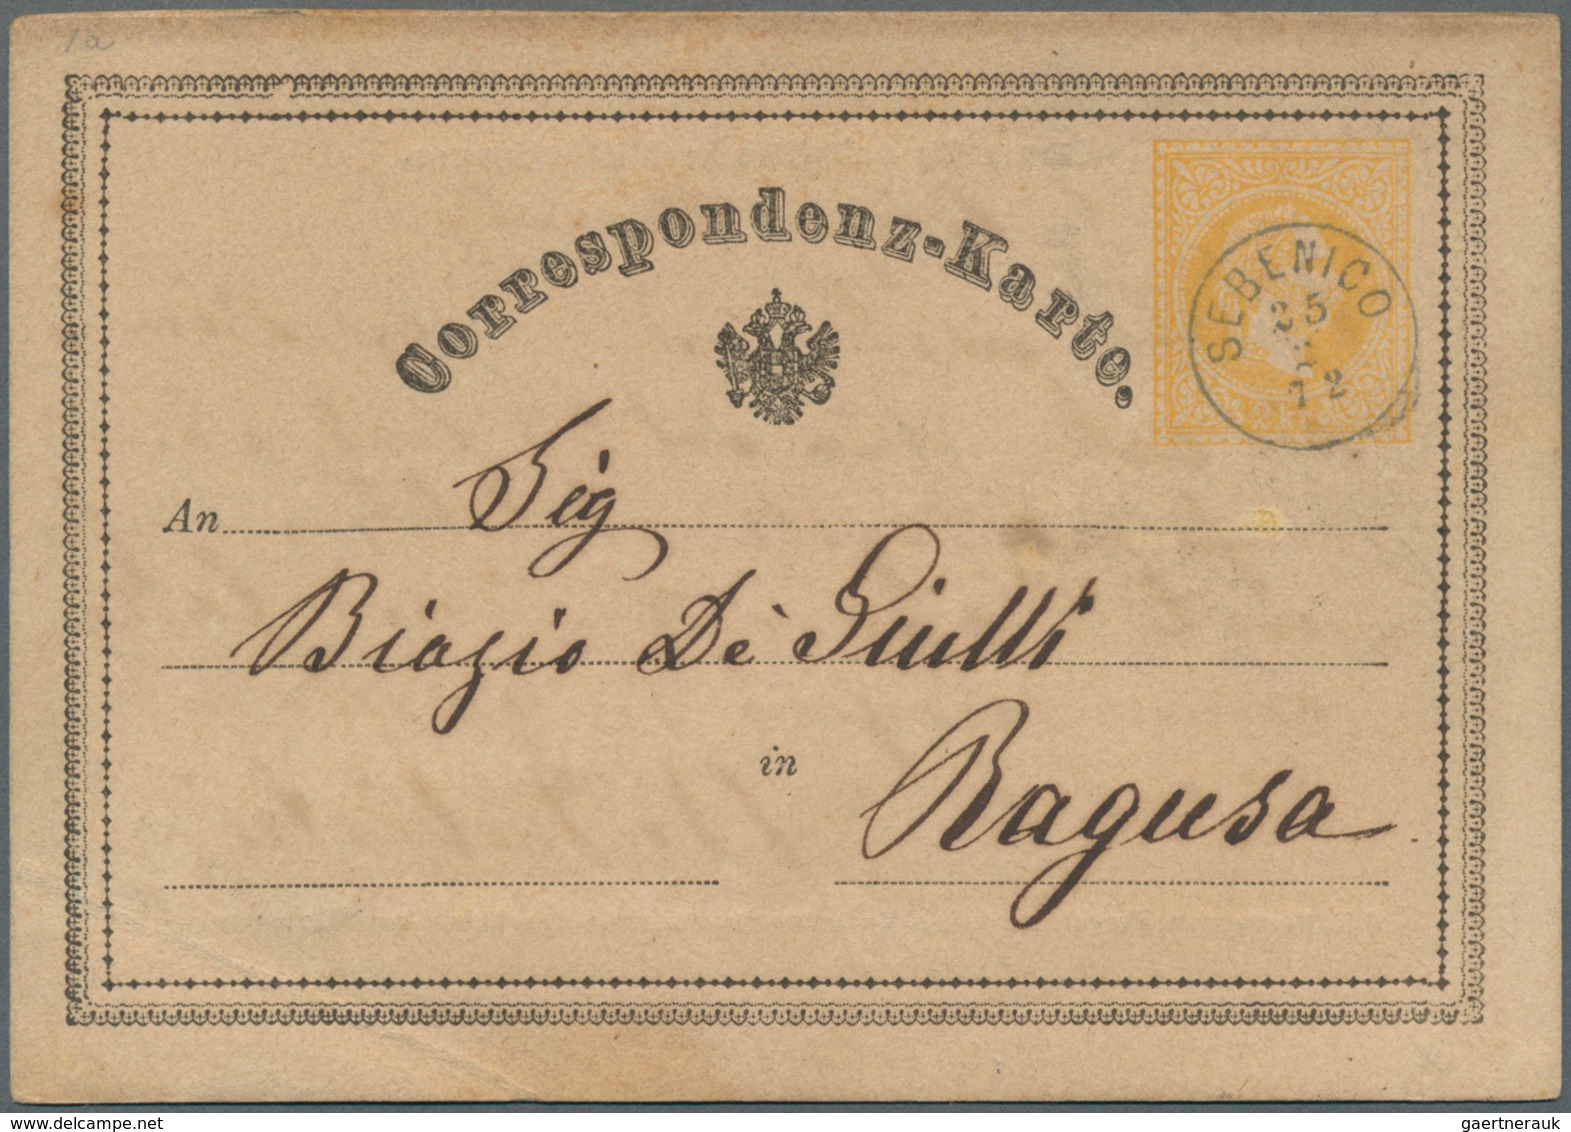 15680 Österreich - Ganzsachen: 1870/1876, 13 Correspondenz-Karten 2 Kr. gelb mit teils unterschiedl. Typen